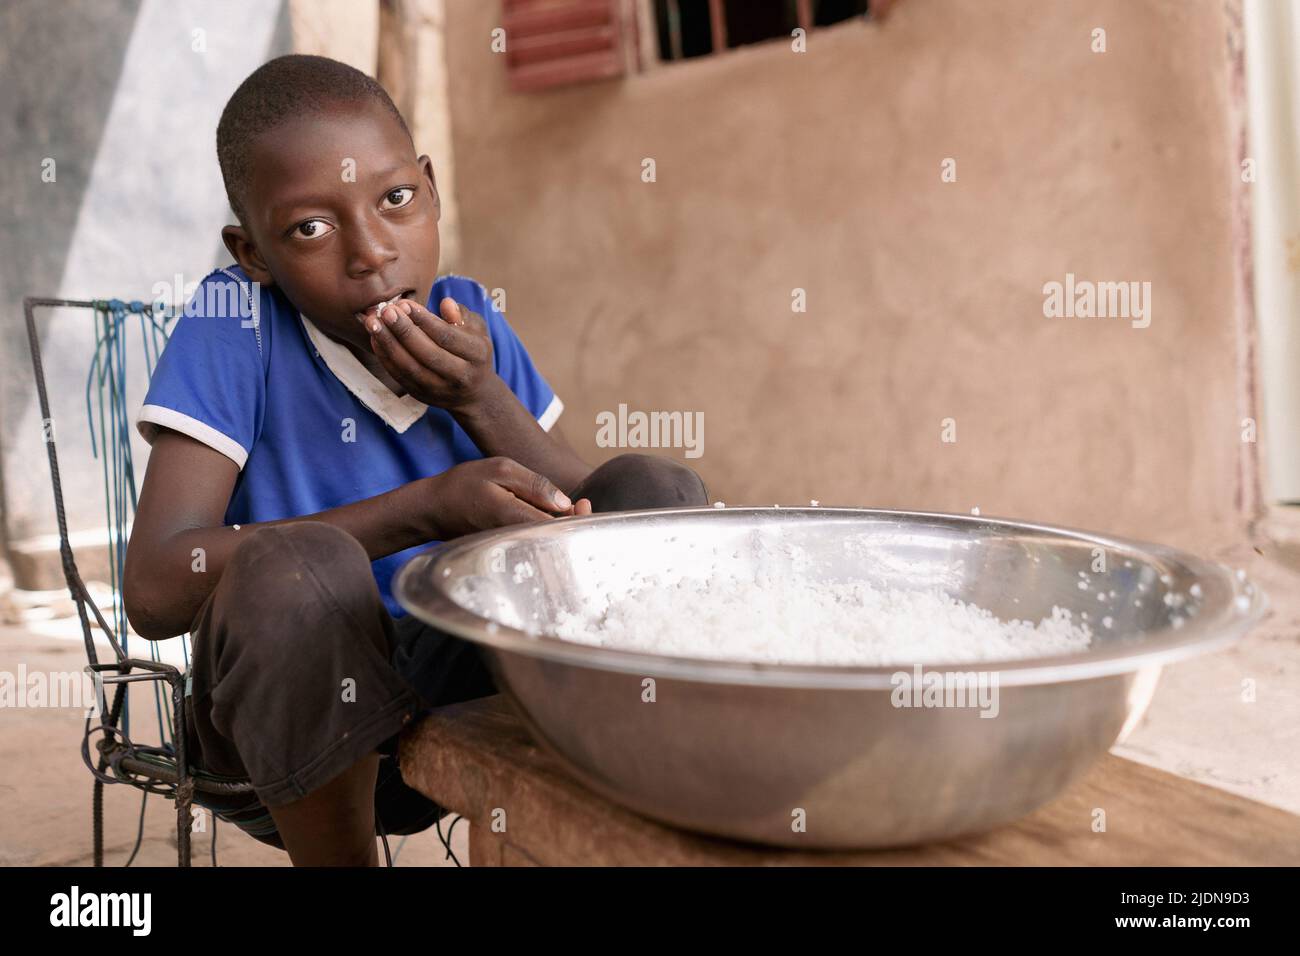 Armer afrikanischer Junge, der einfachen Reis ohne Gewürze, Gemüse oder Fleisch aus einer großen Metallschüssel isst; Konzept der Unterernährung Stockfoto